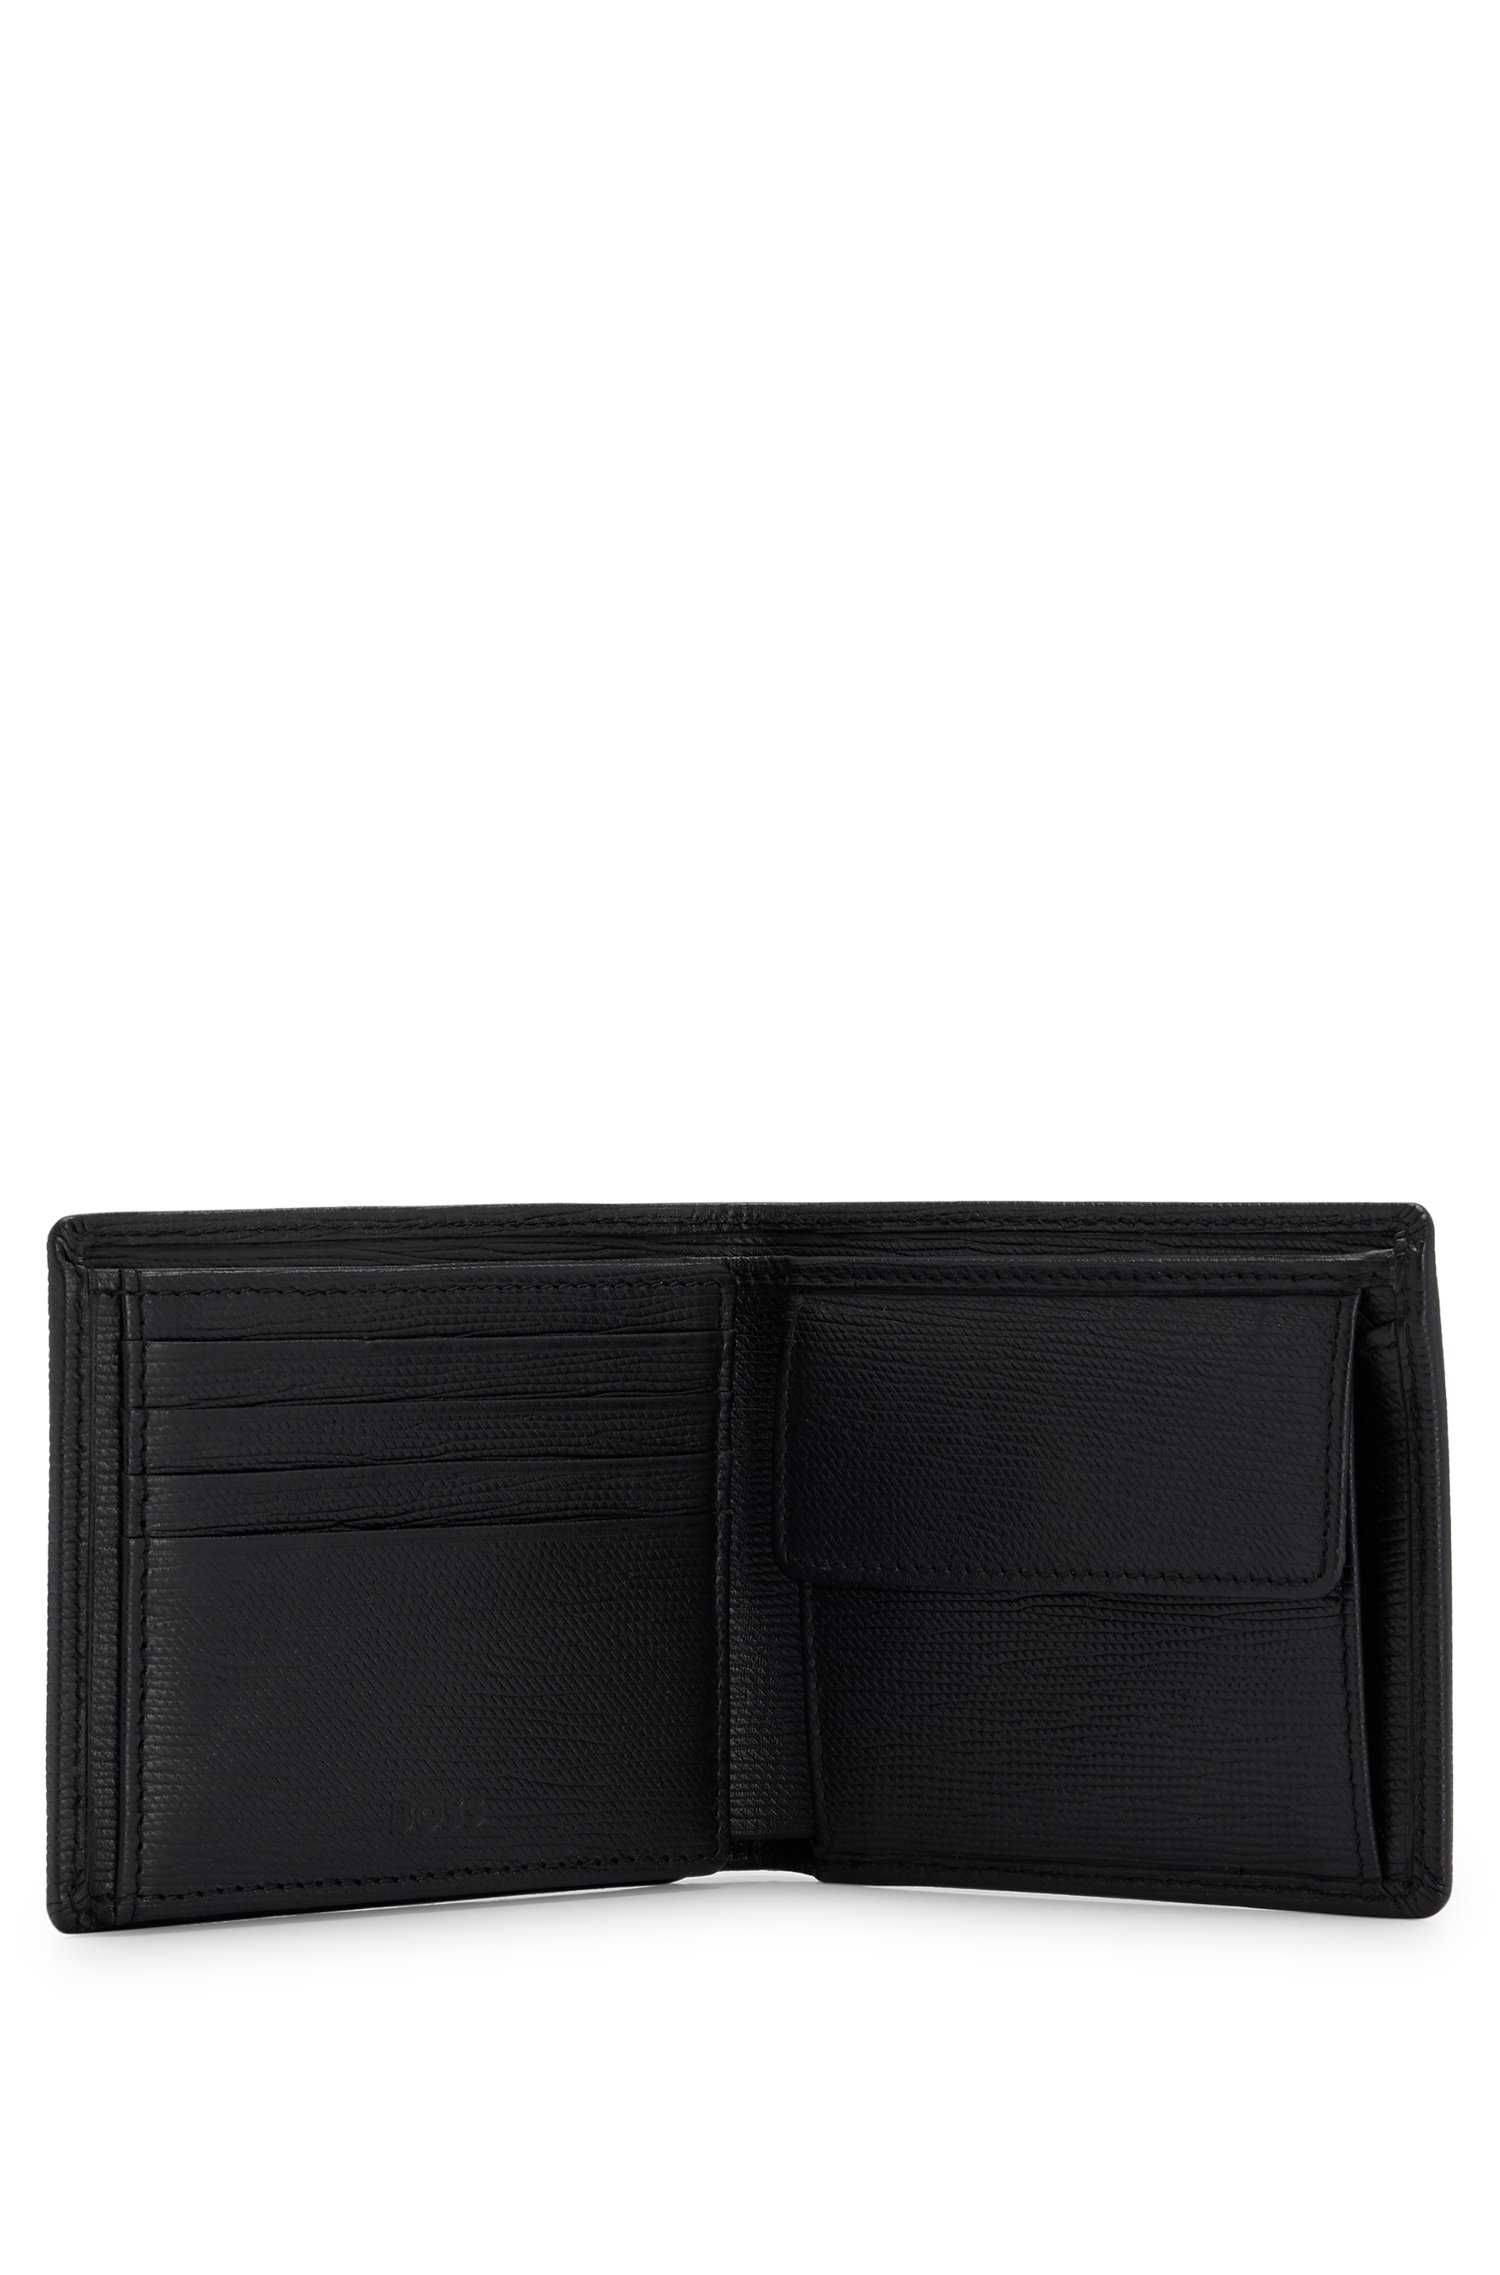 Кожаный кошелек Hugo Boss с логотипом. Оригинал